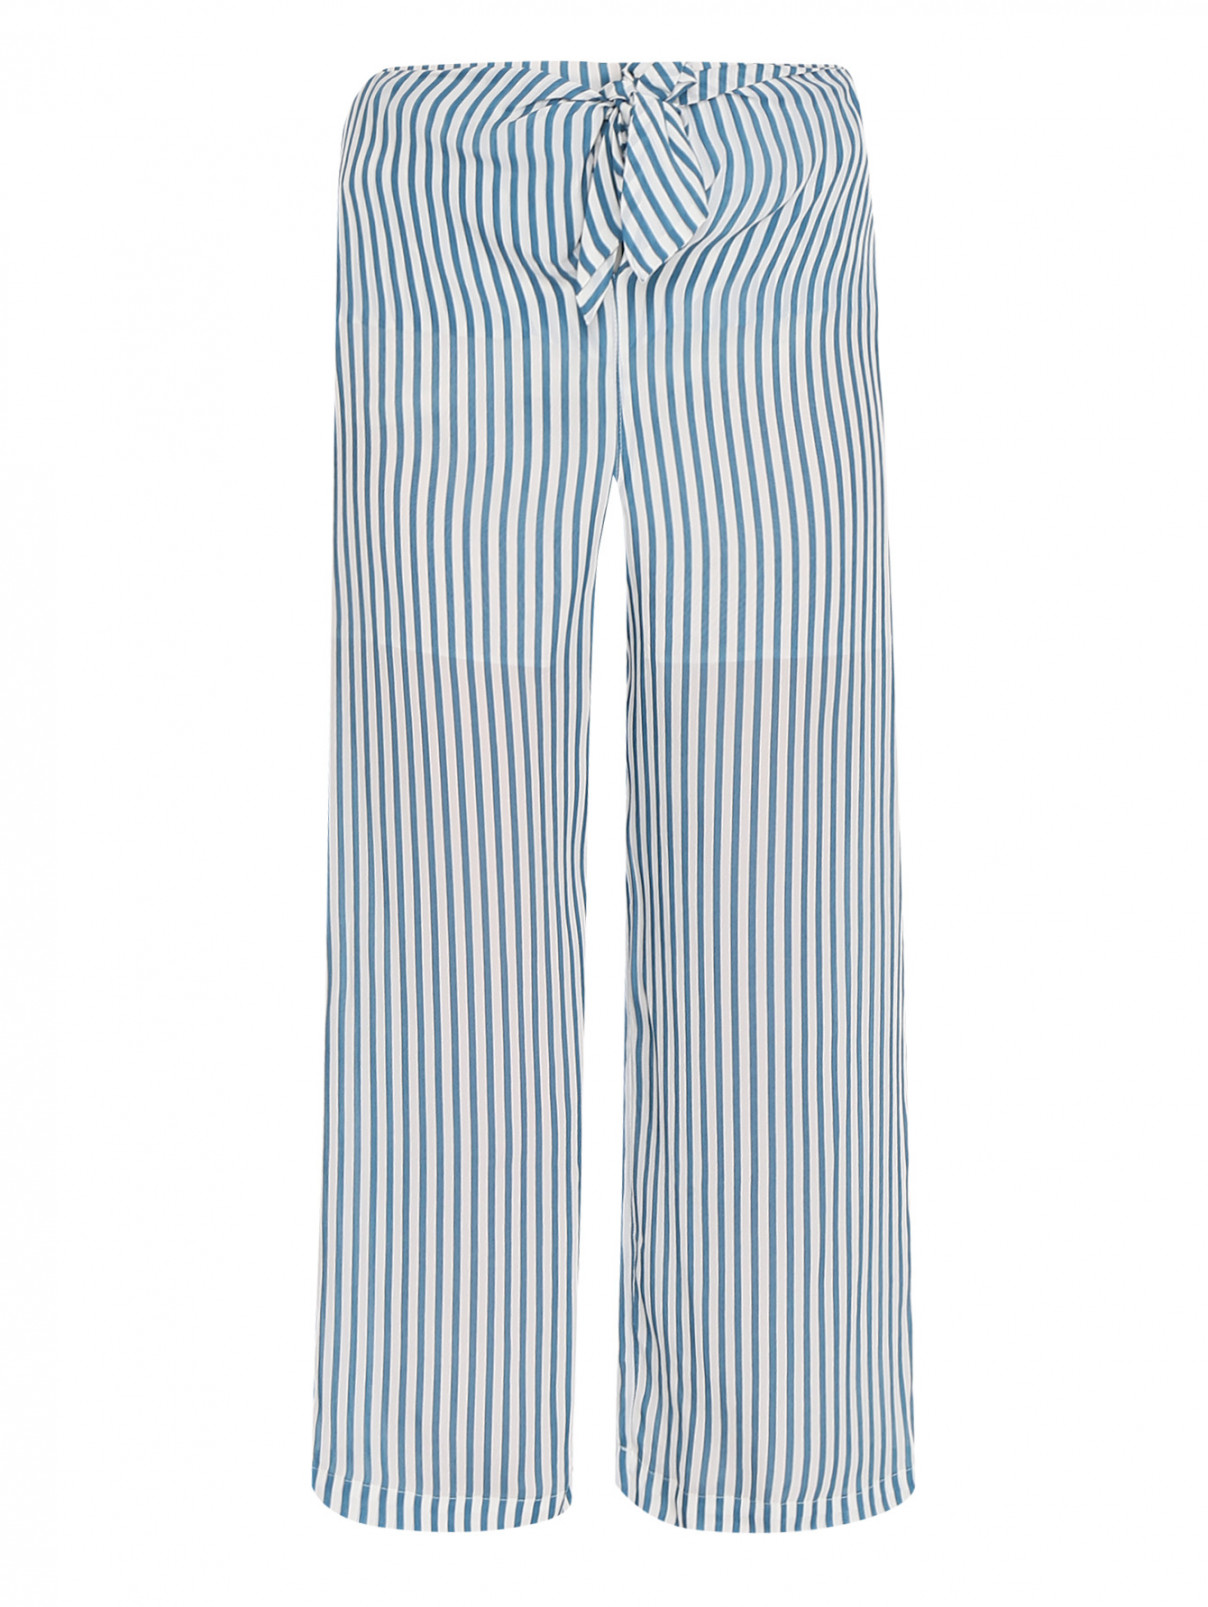 Укороченные брюки с узором полоска PennyBlack  –  Общий вид  – Цвет:  Синий